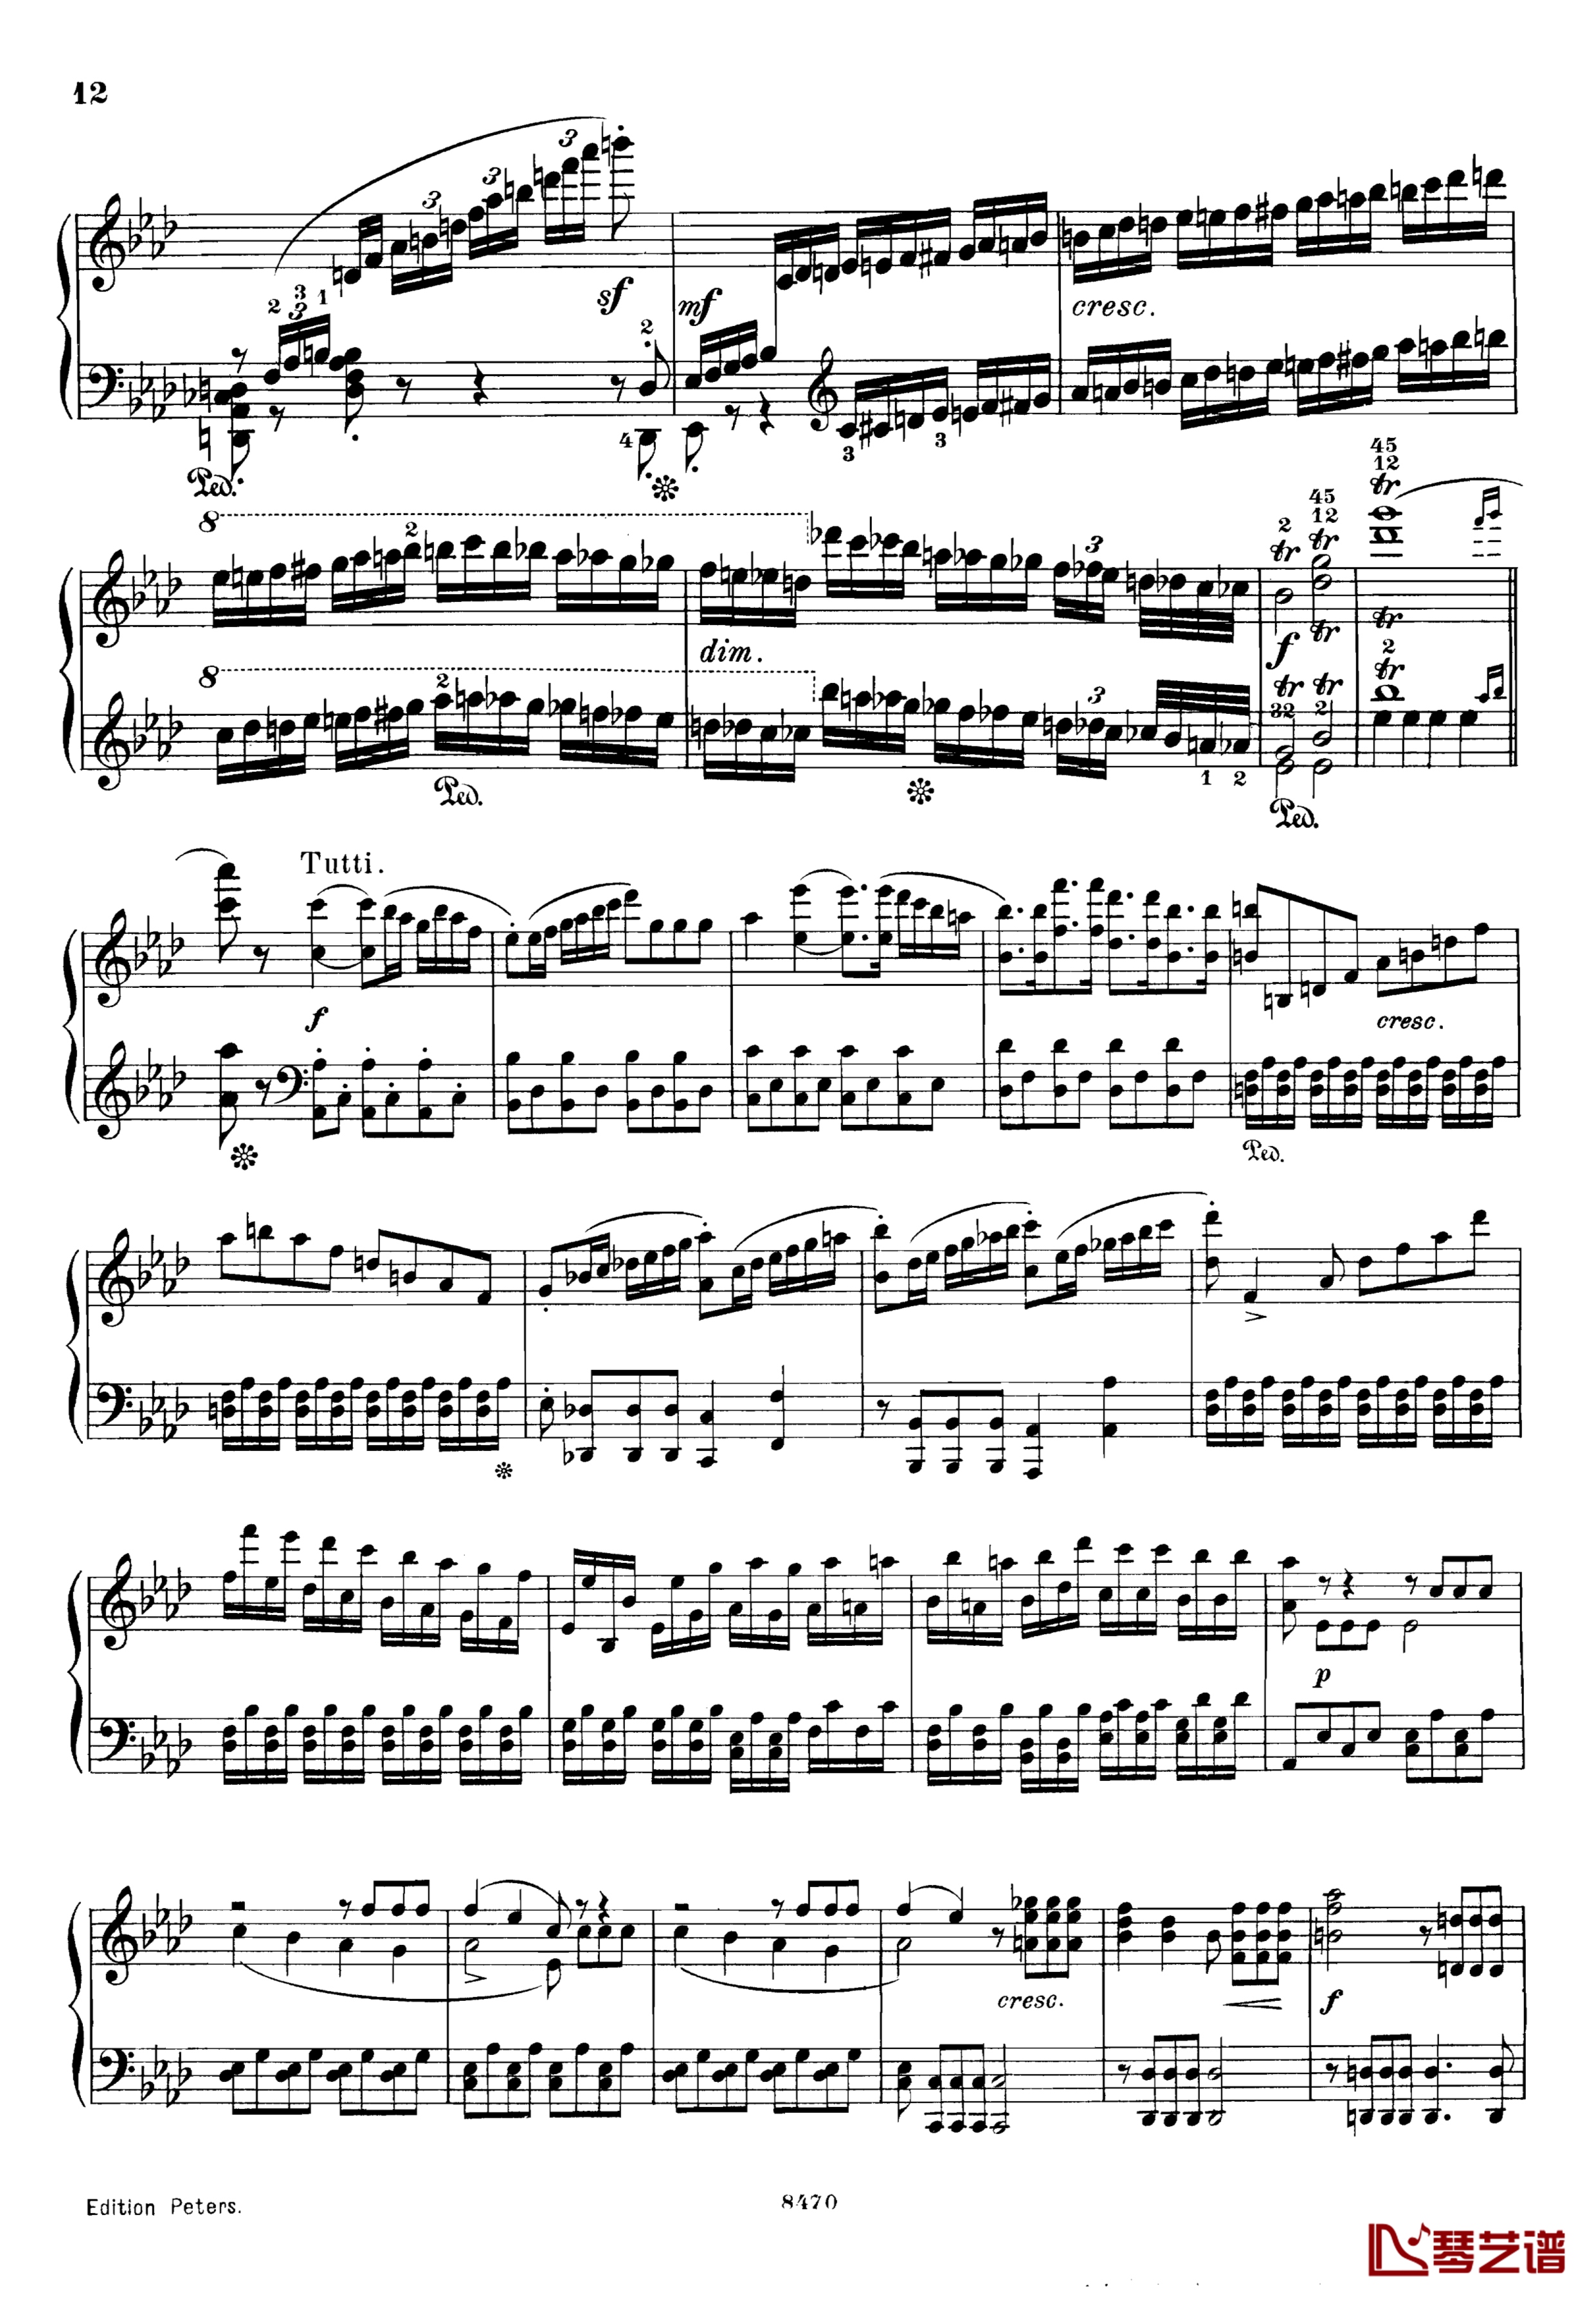 升c小调第三钢琴协奏曲Op.55钢琴谱-克里斯蒂安-里斯12